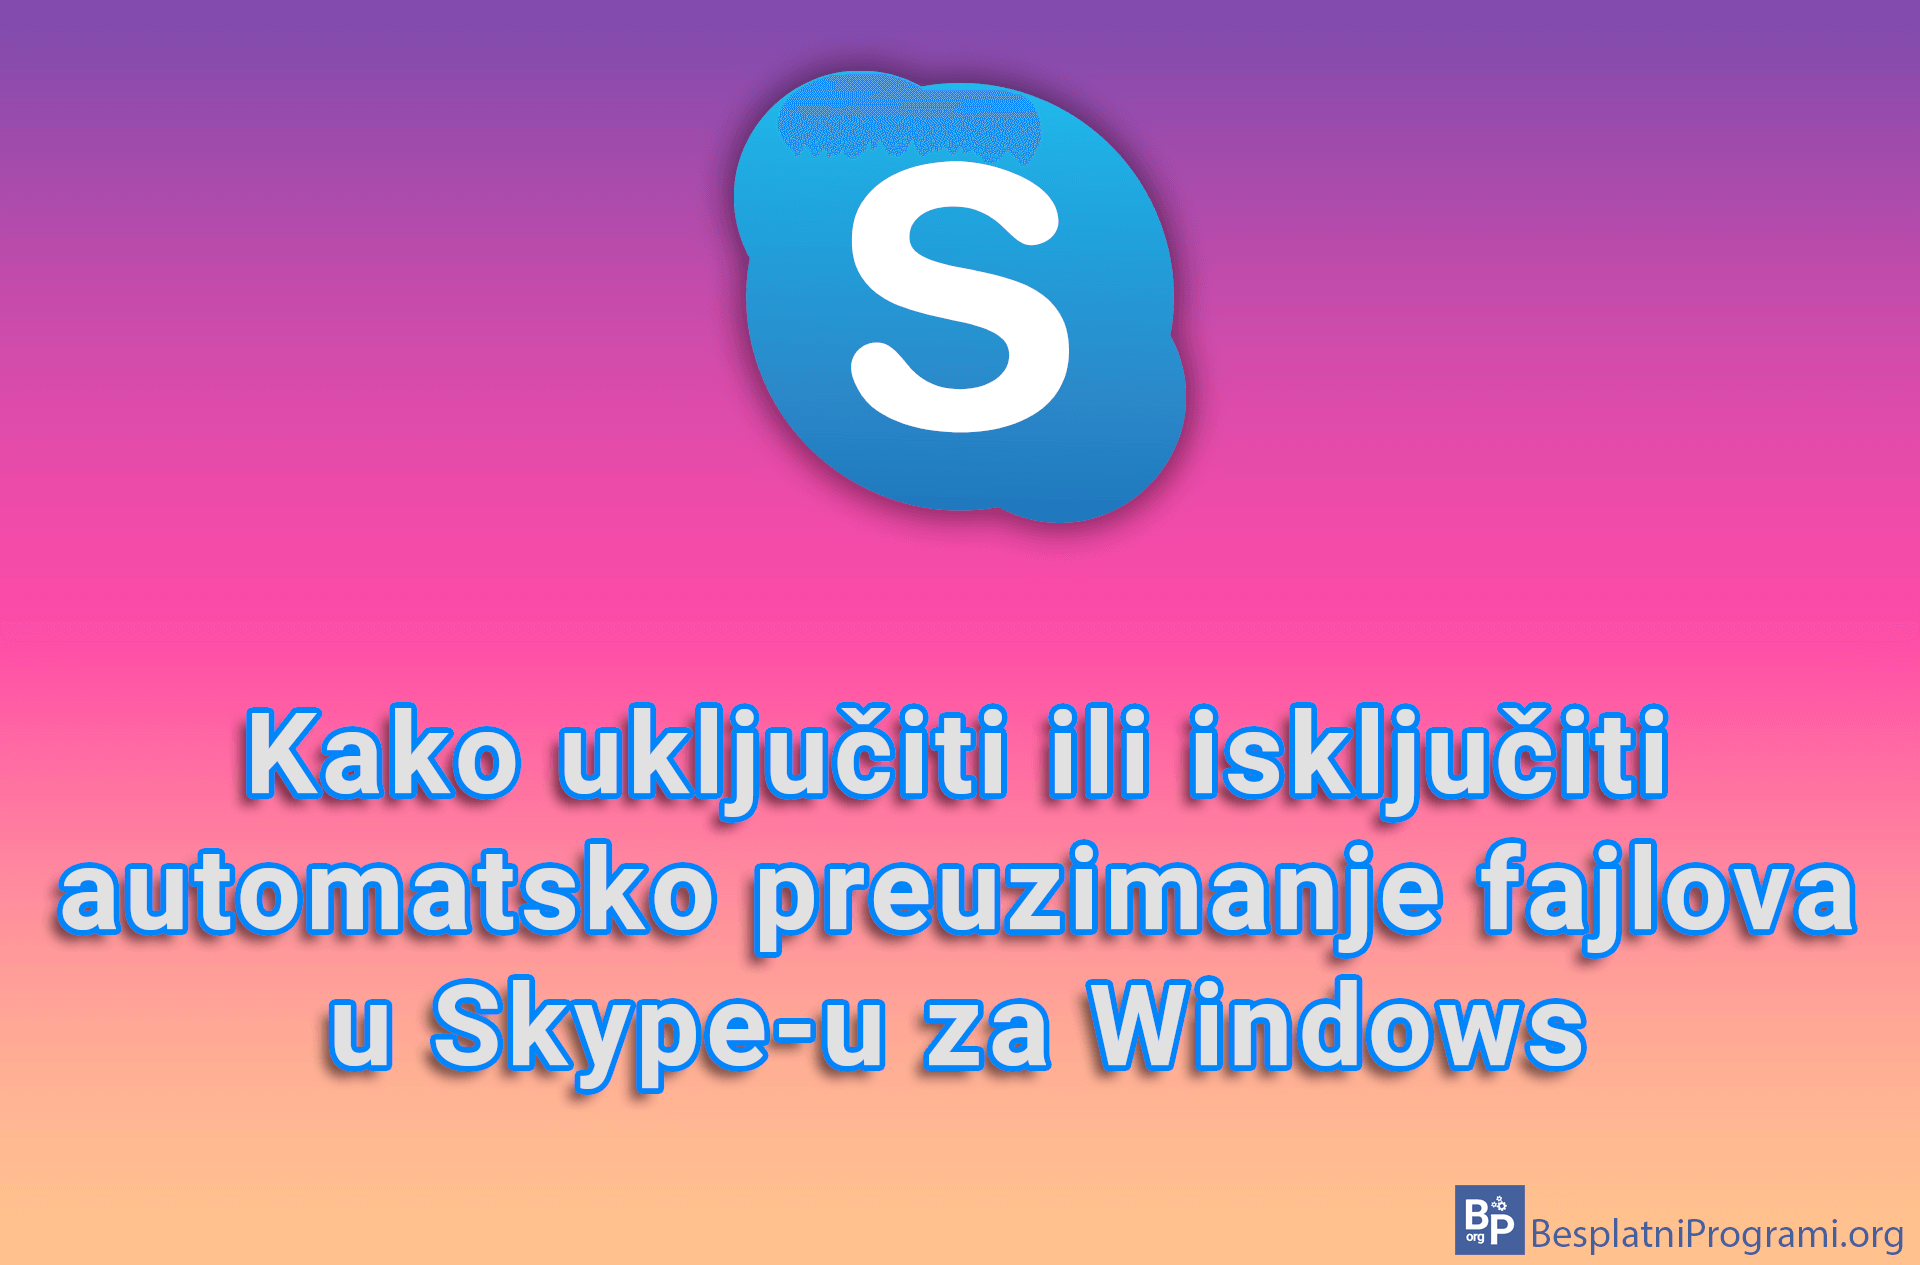 Kako uključiti ili isključiti automatsko preuzimanje fajlova u Skype-u za Windows